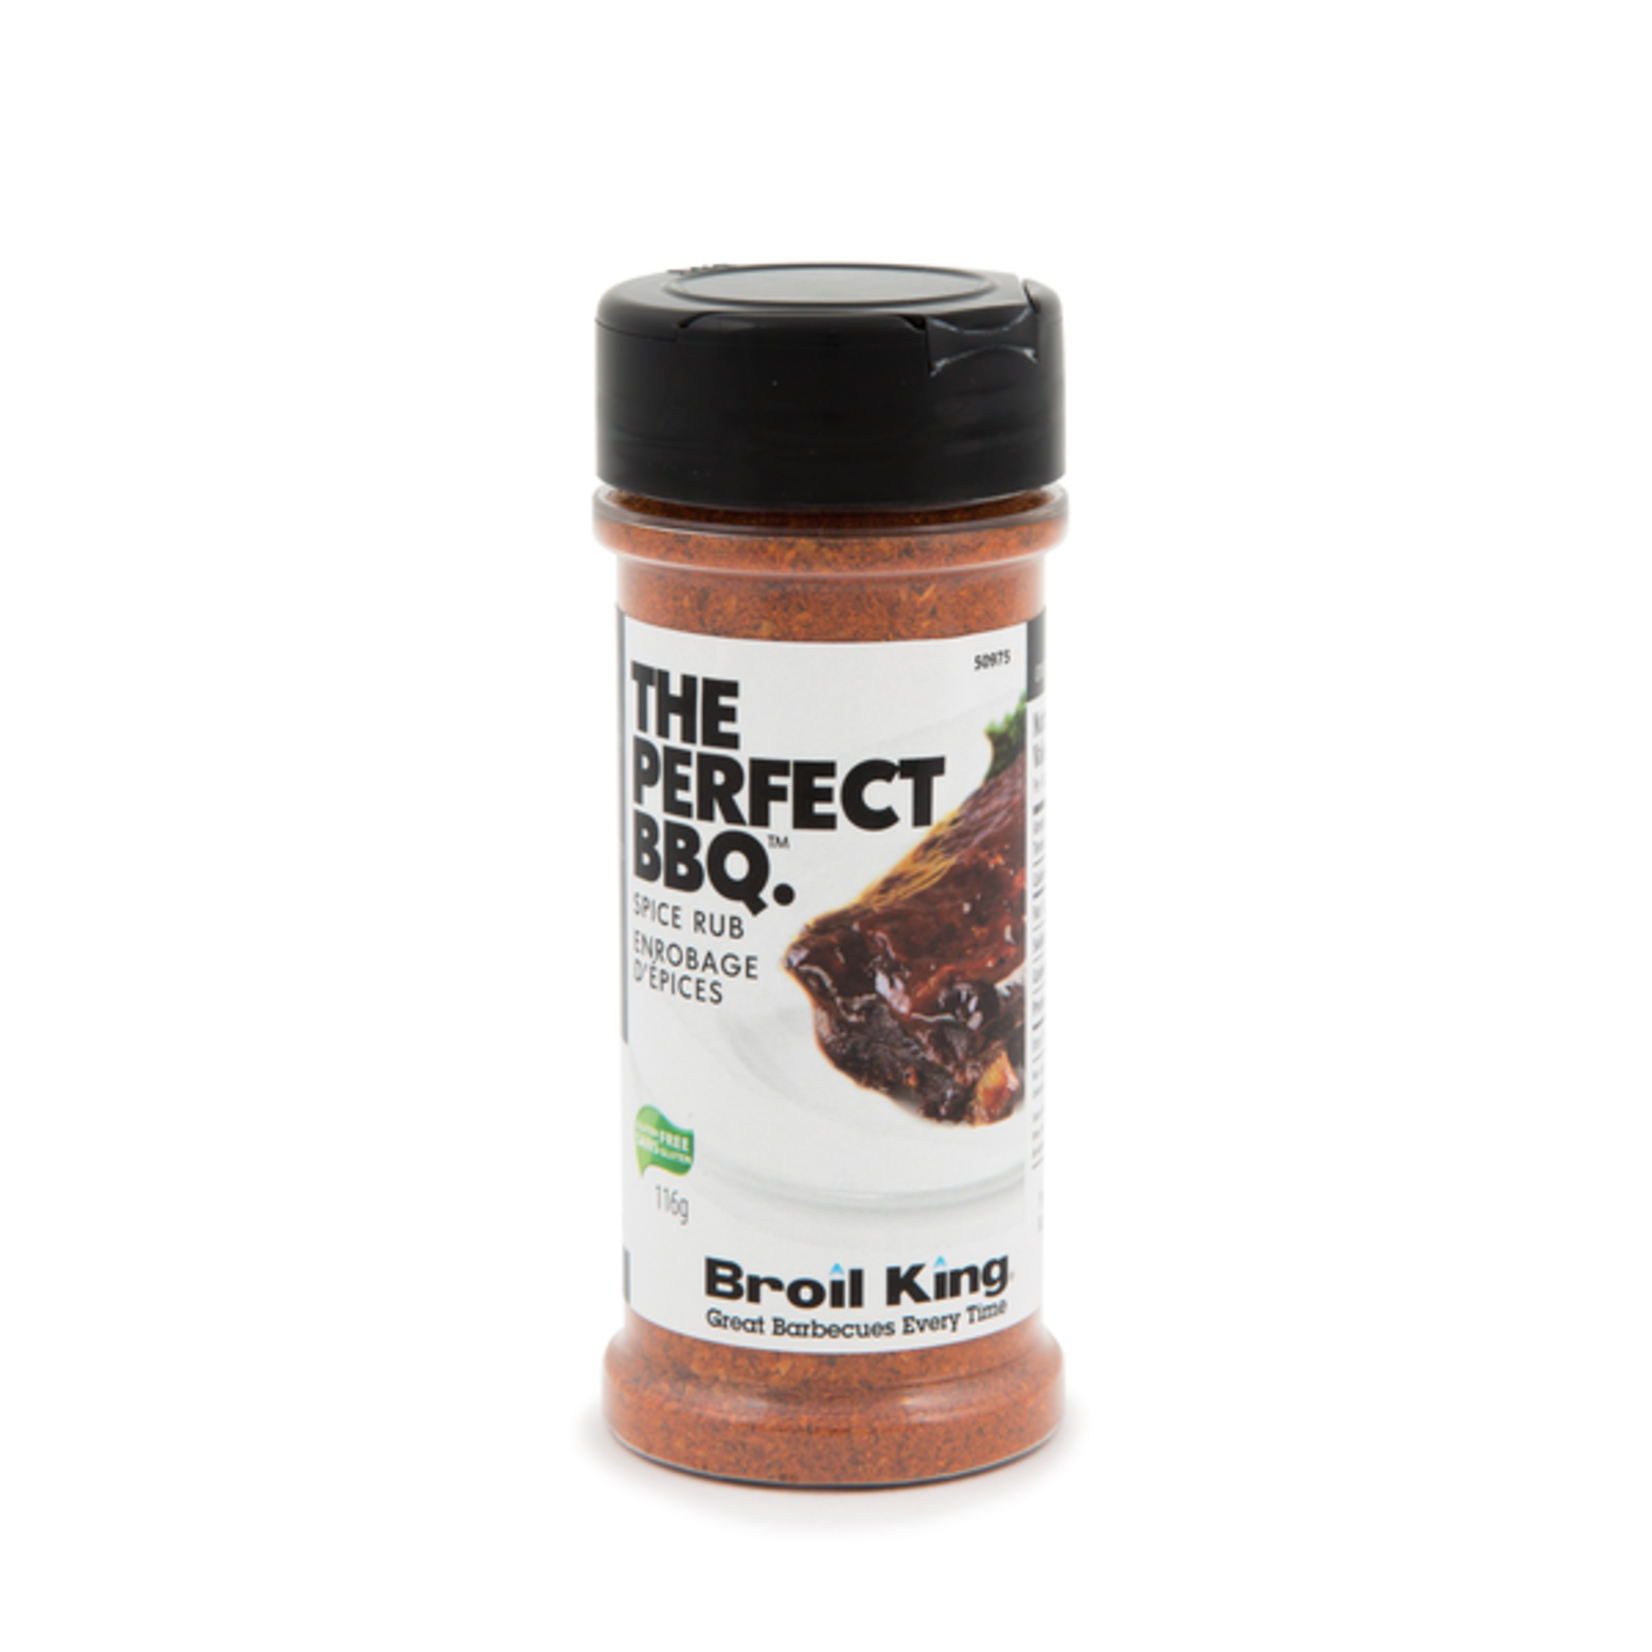 Broil King Spice Rub - Perfect BBQ